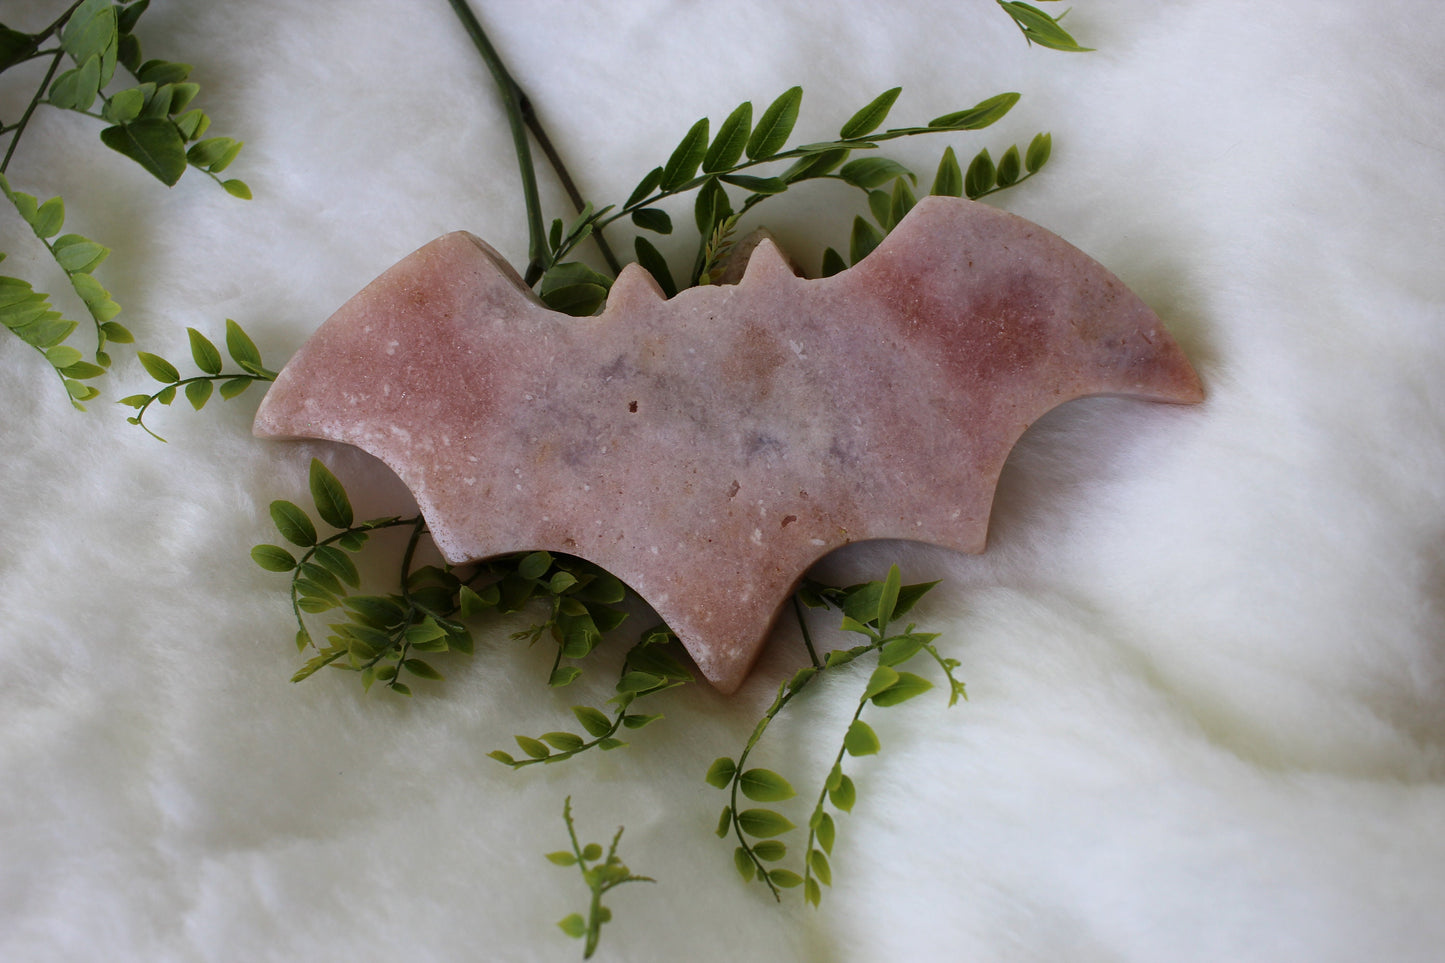 Large Carved Bat - Pink Amethyst Polished Stones | Pink Druzy Crystal Carving Nocturnal Pollinators Brazil